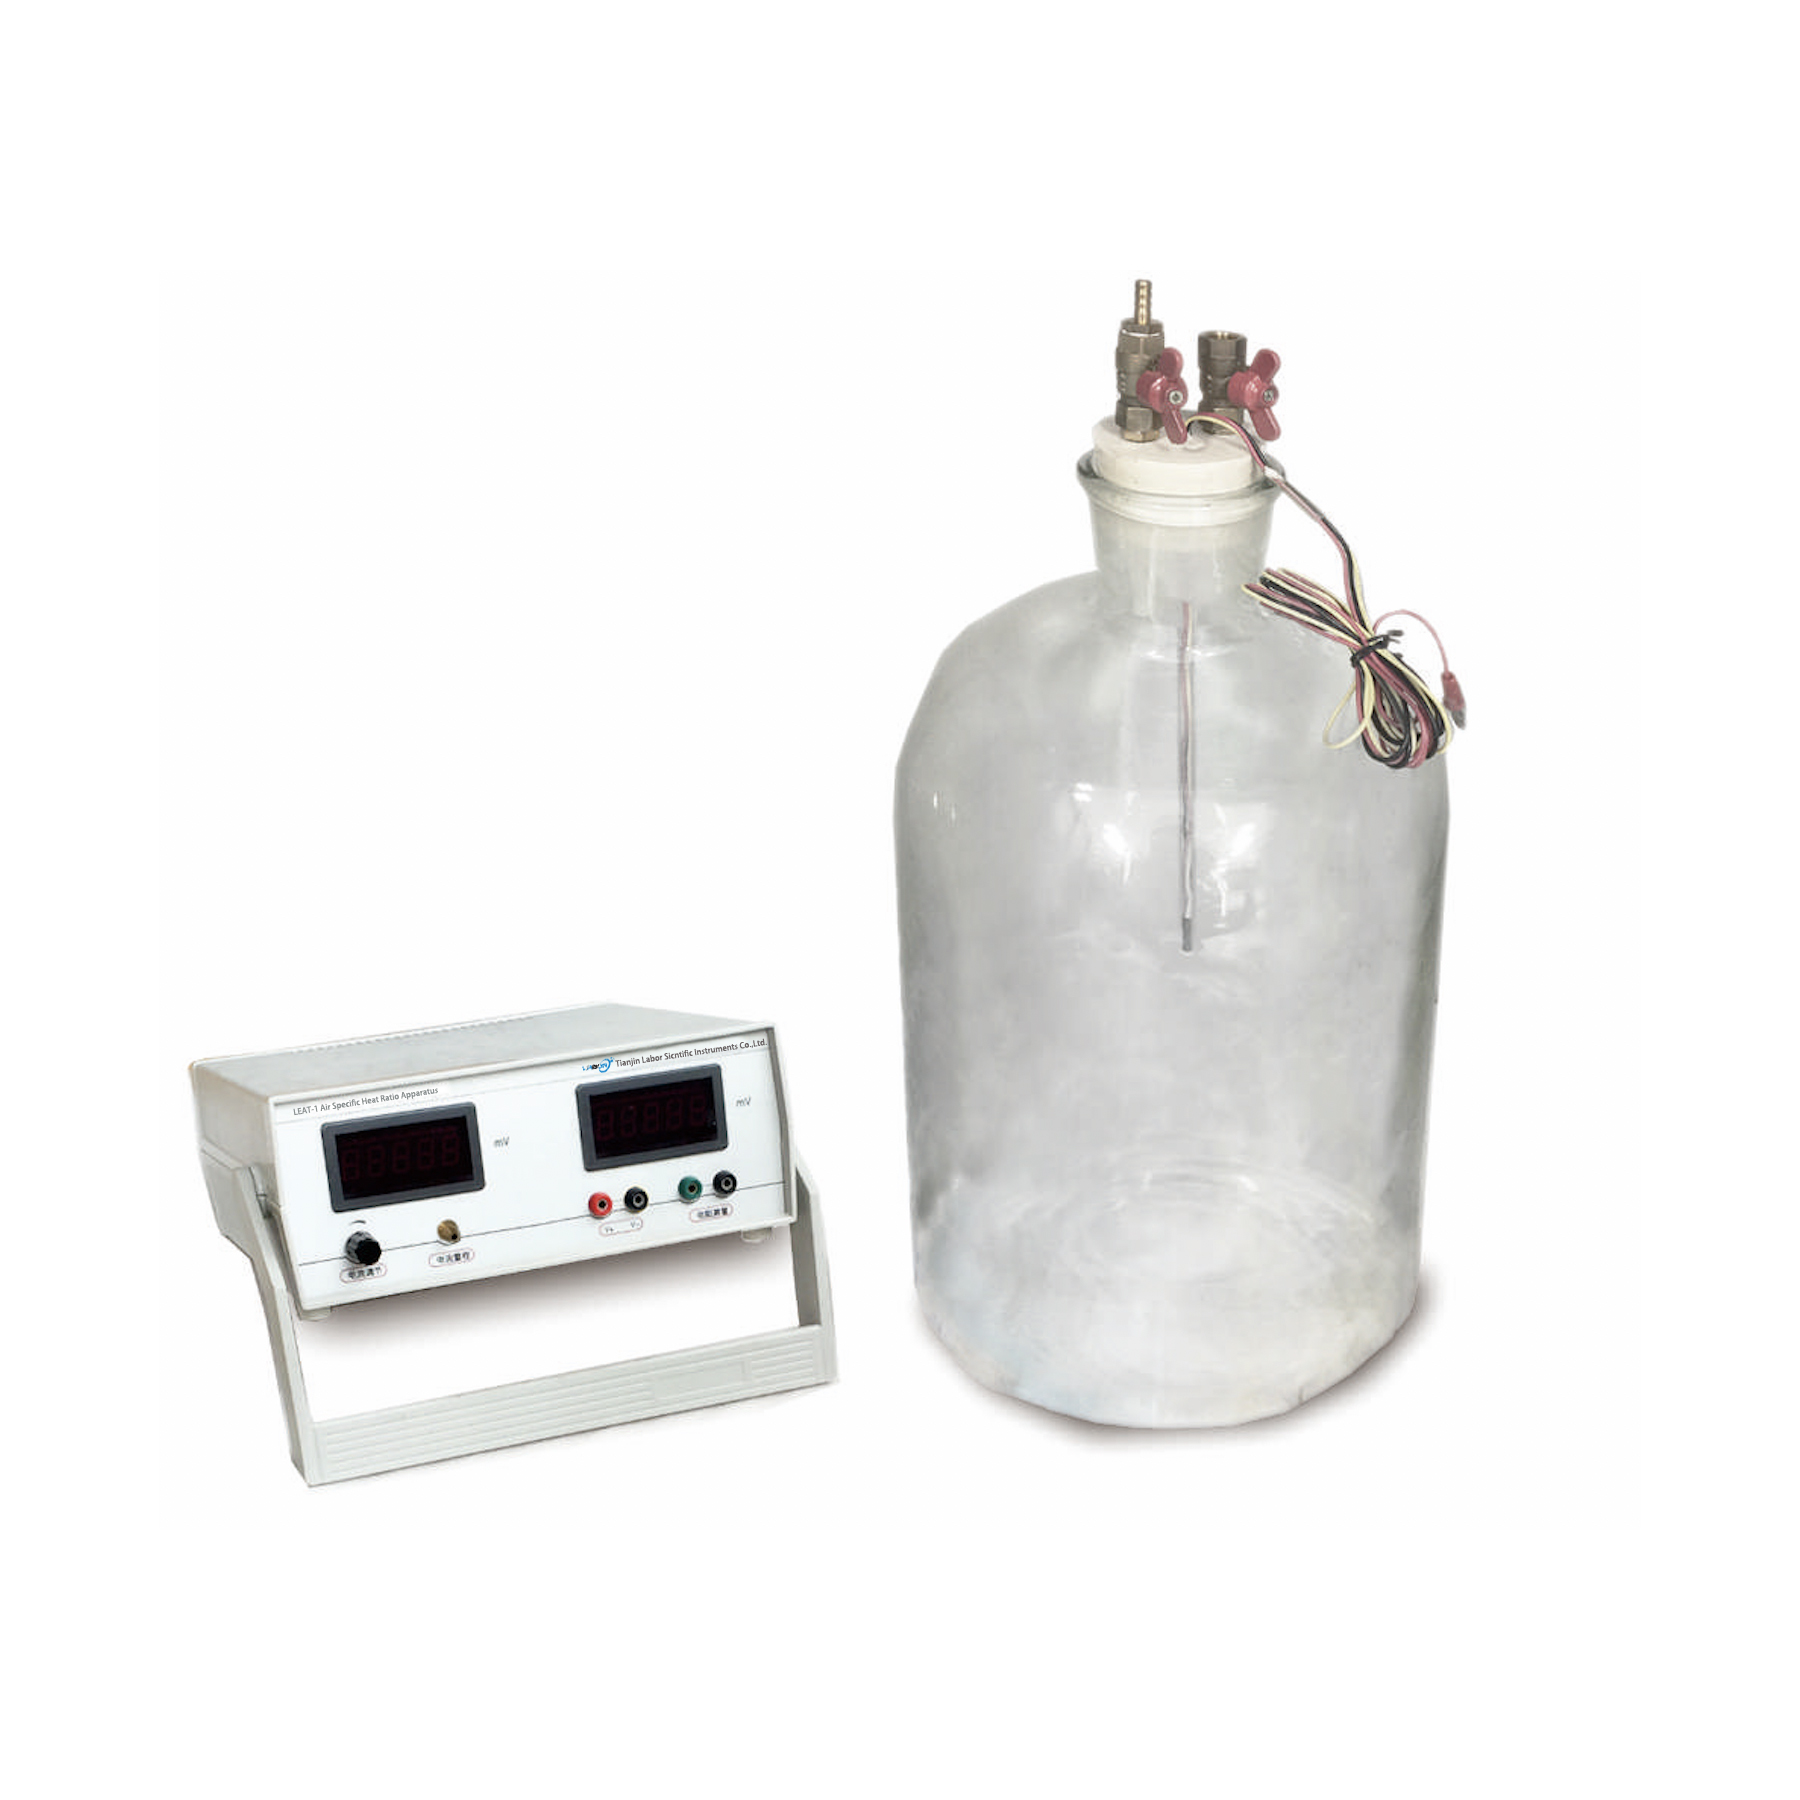 LEAT-1 Air Specific Heat Ratio Apparatus